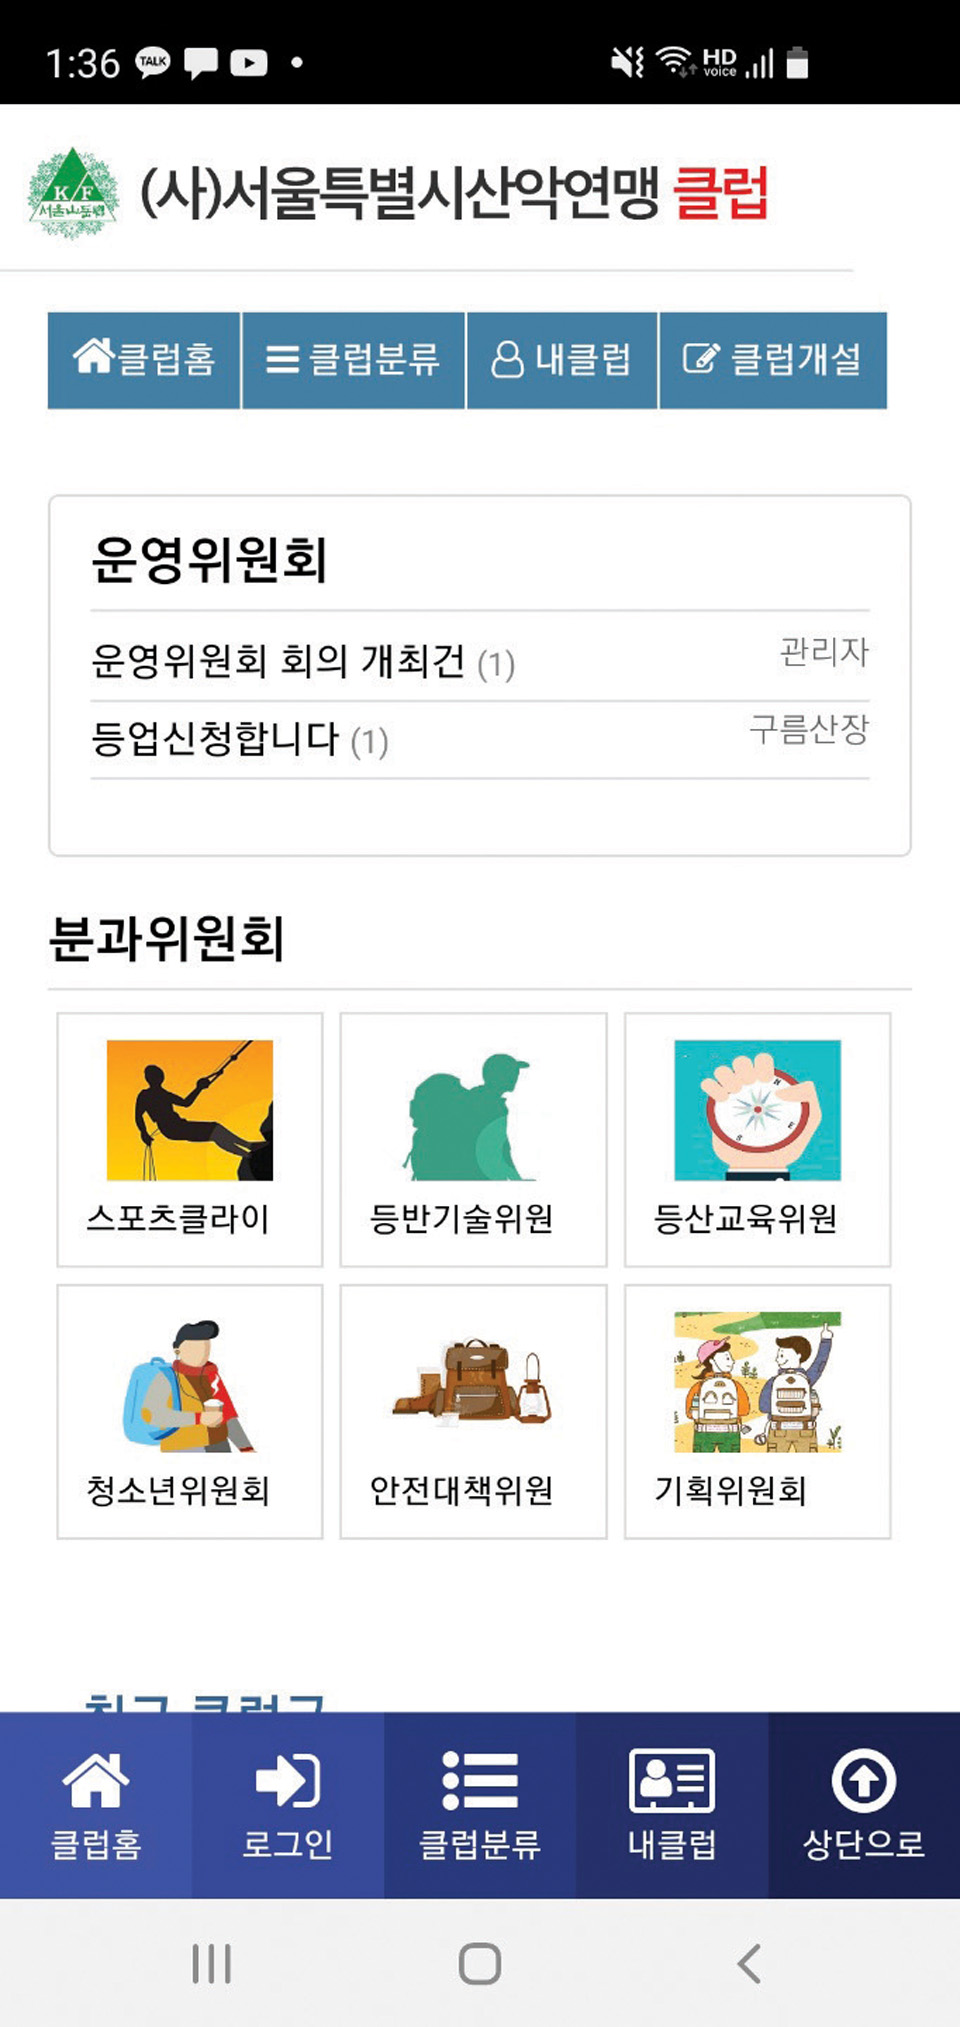 서울시산악연맹 어플 캡처 화면.